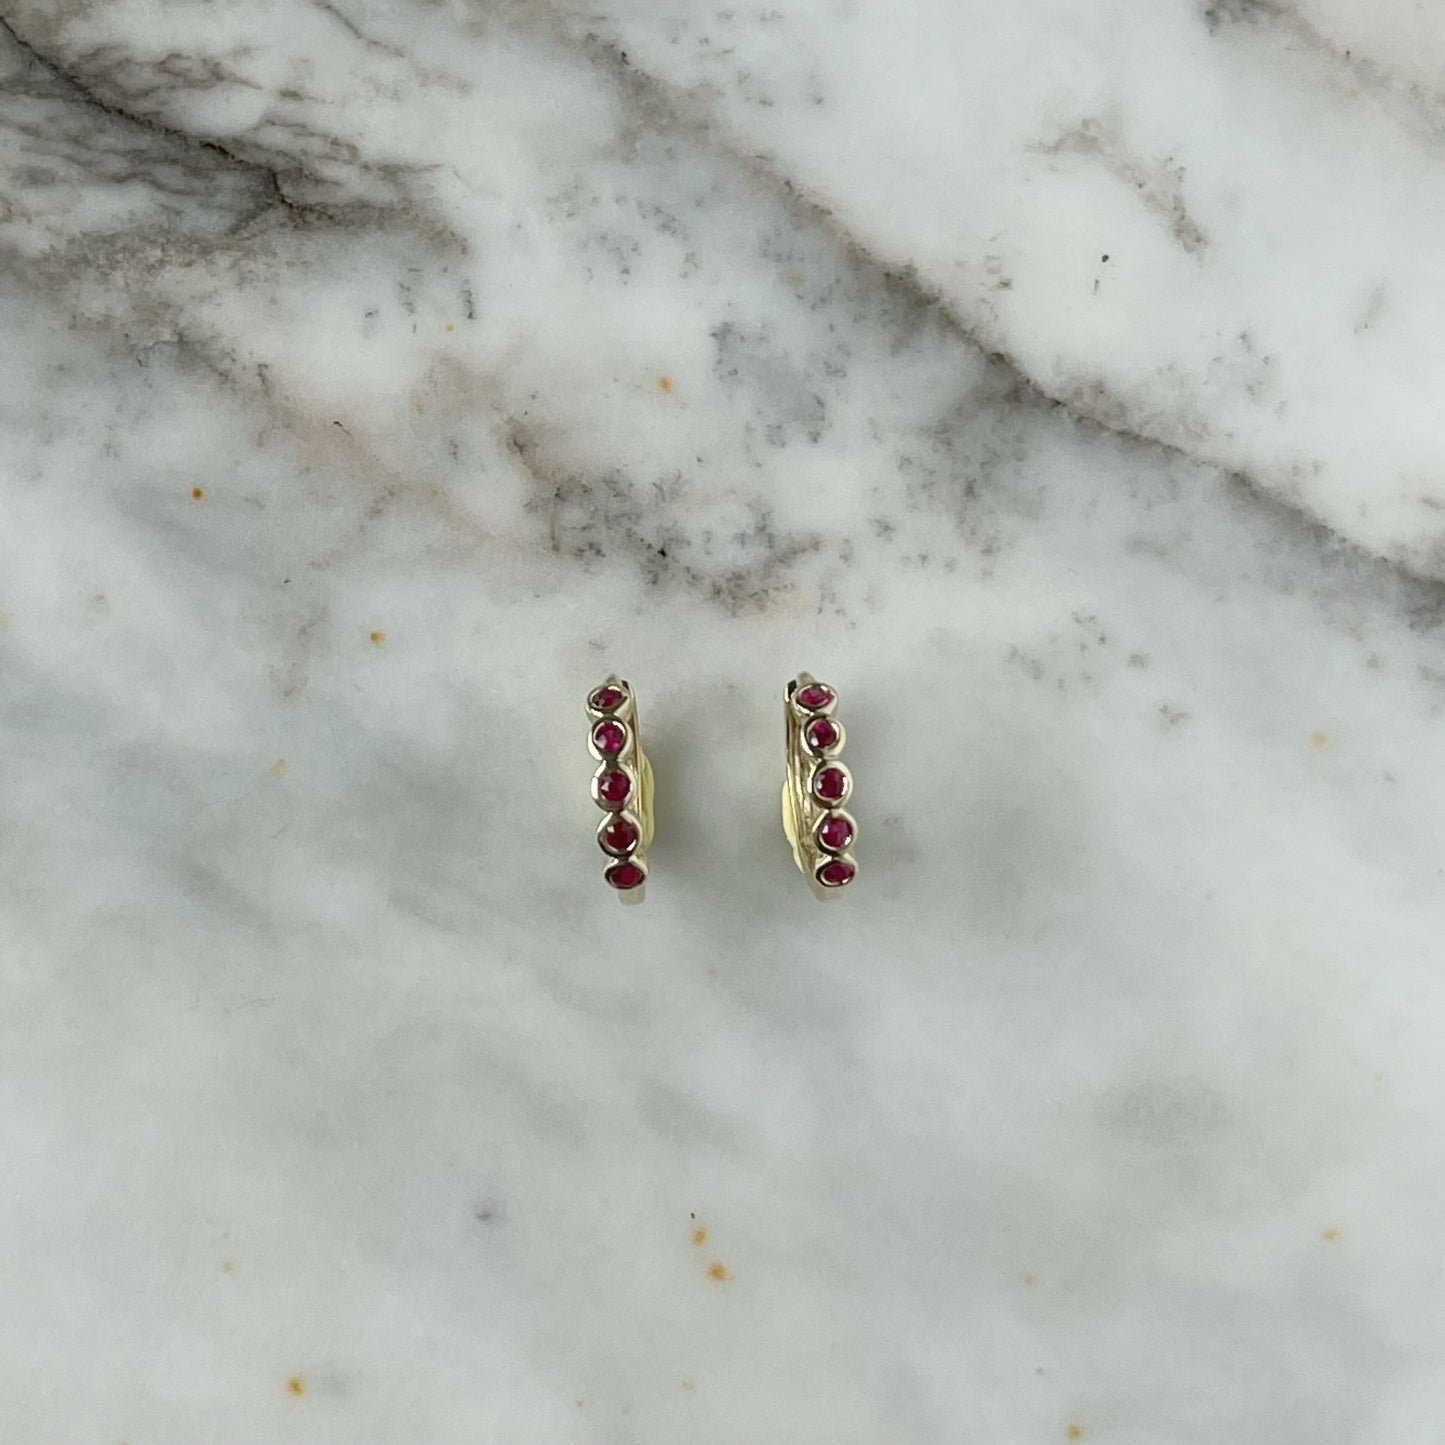 Mini huggies en oro amarillo 10k con rubíes biselados